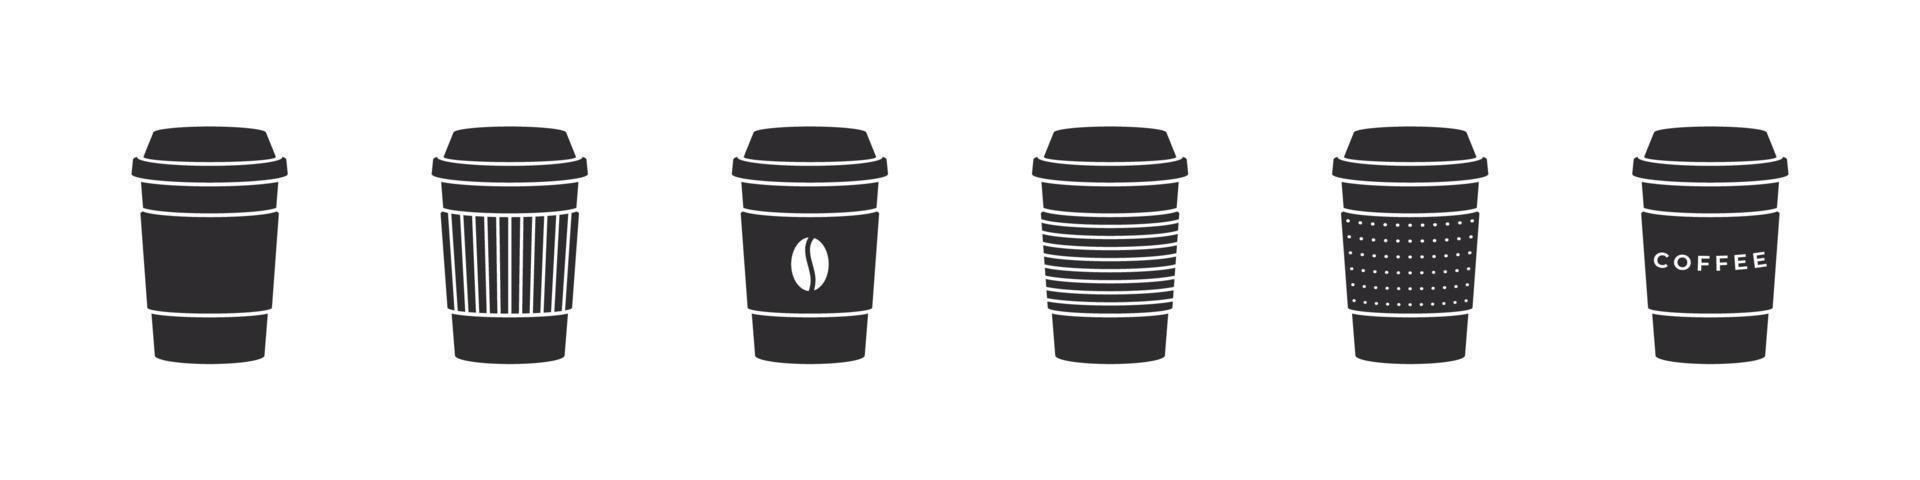 kaffe ikoner. kaffe kopp ikoner. olika koppar av kaffe. vektor illustration